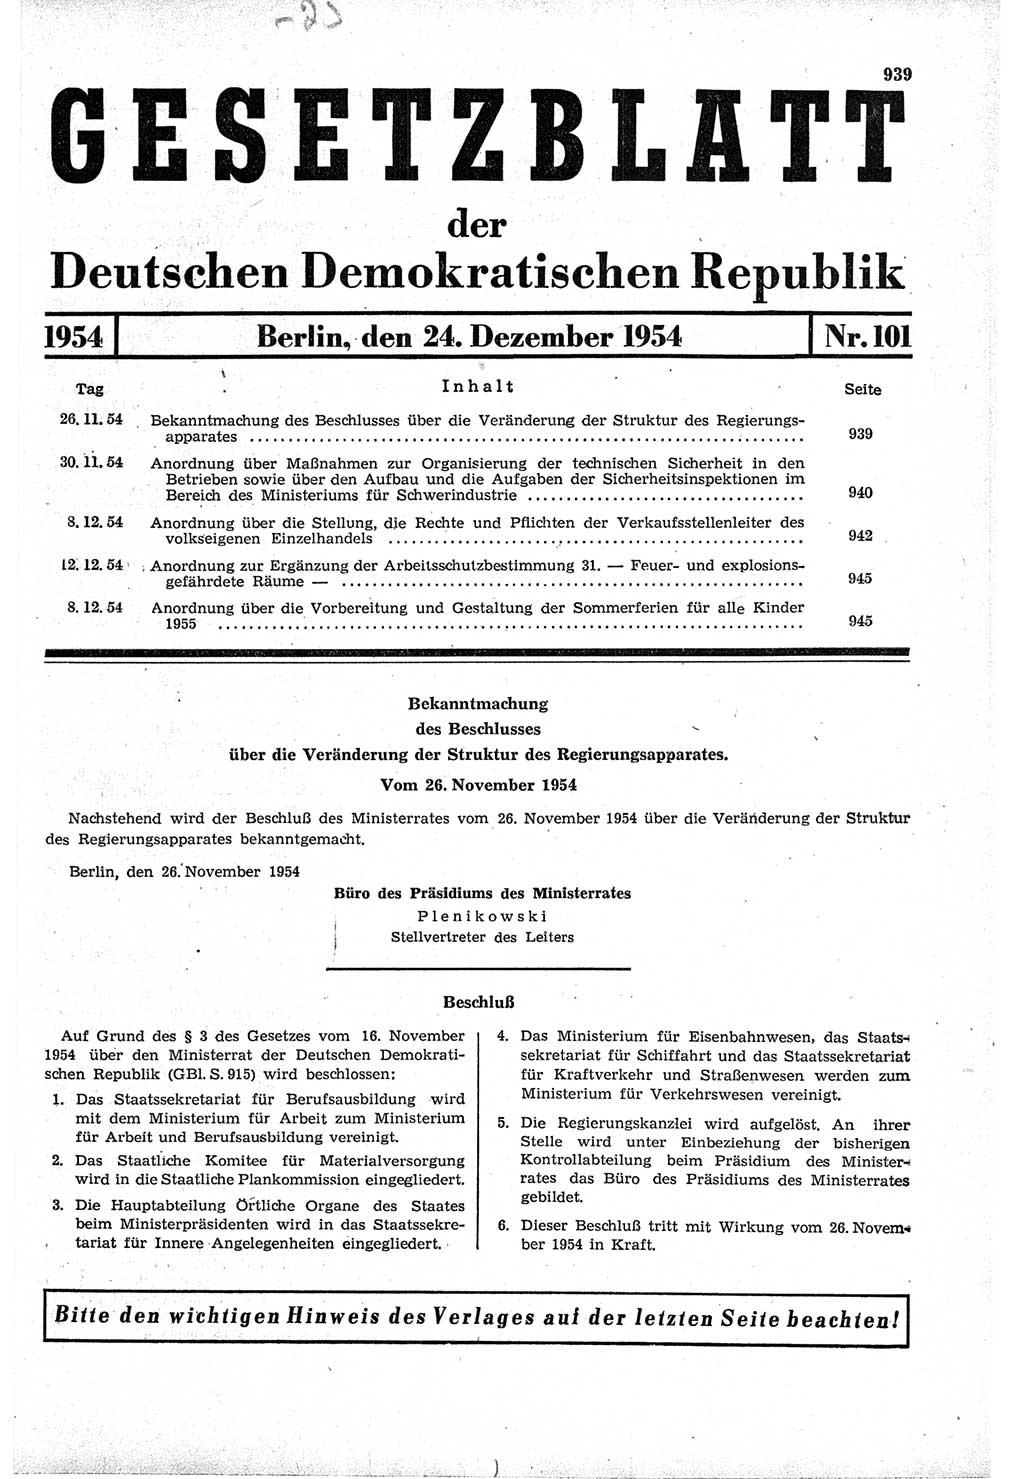 Gesetzblatt (GBl.) der Deutschen Demokratischen Republik (DDR) 1954, Seite 939 (GBl. DDR 1954, S. 939)